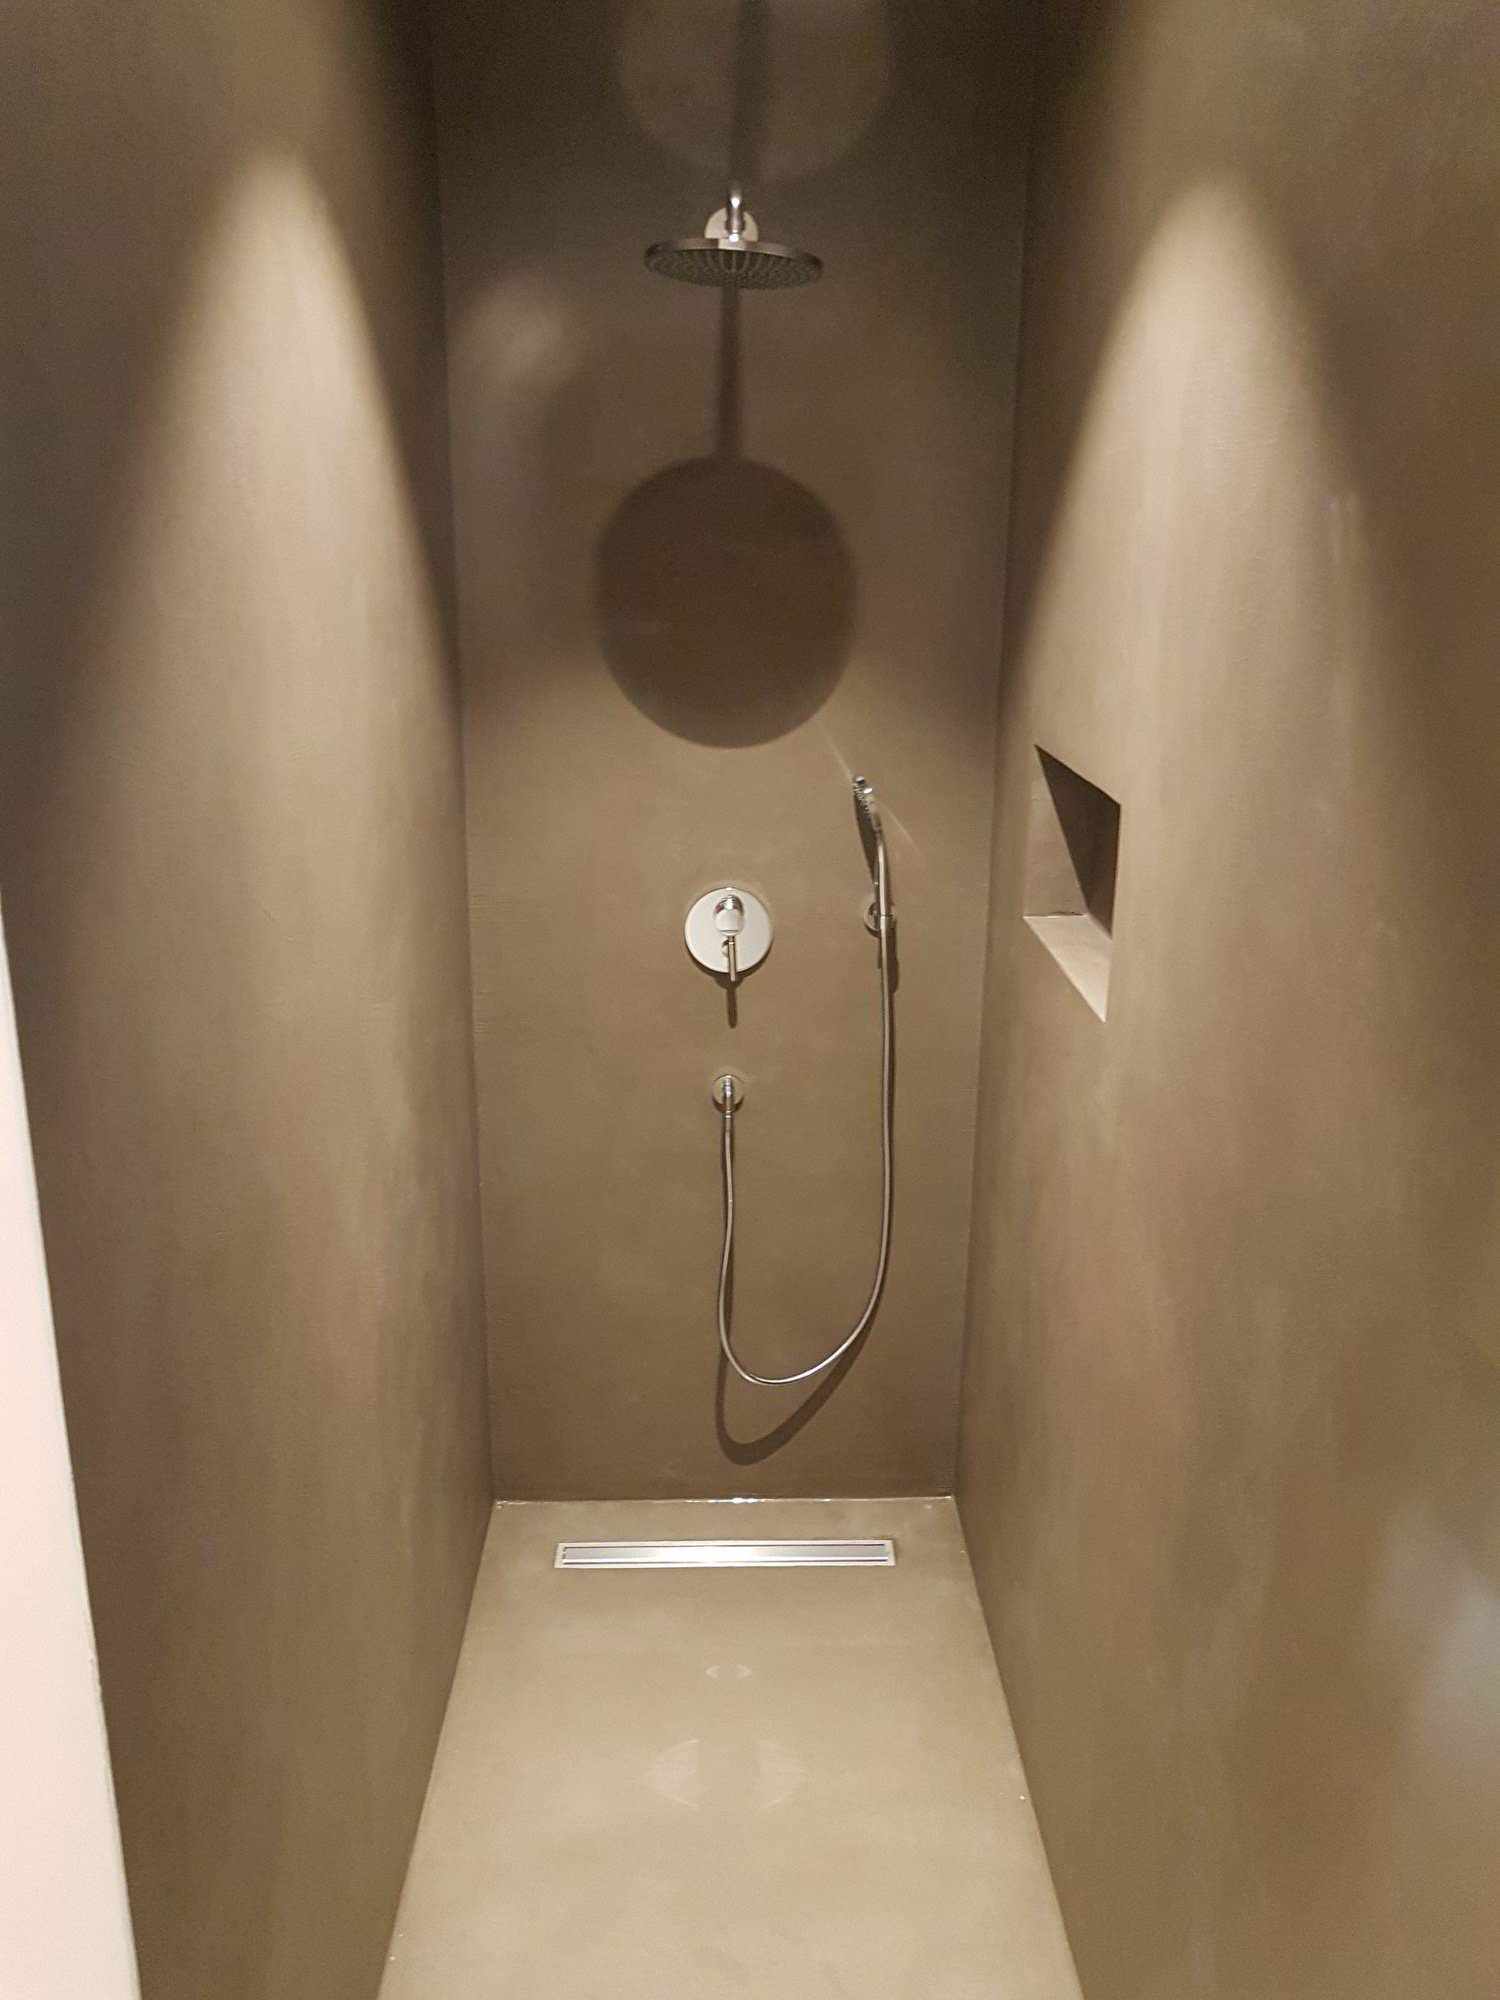 Ľahké pokrytie mikrocementu na stenách a podlahe sprchy